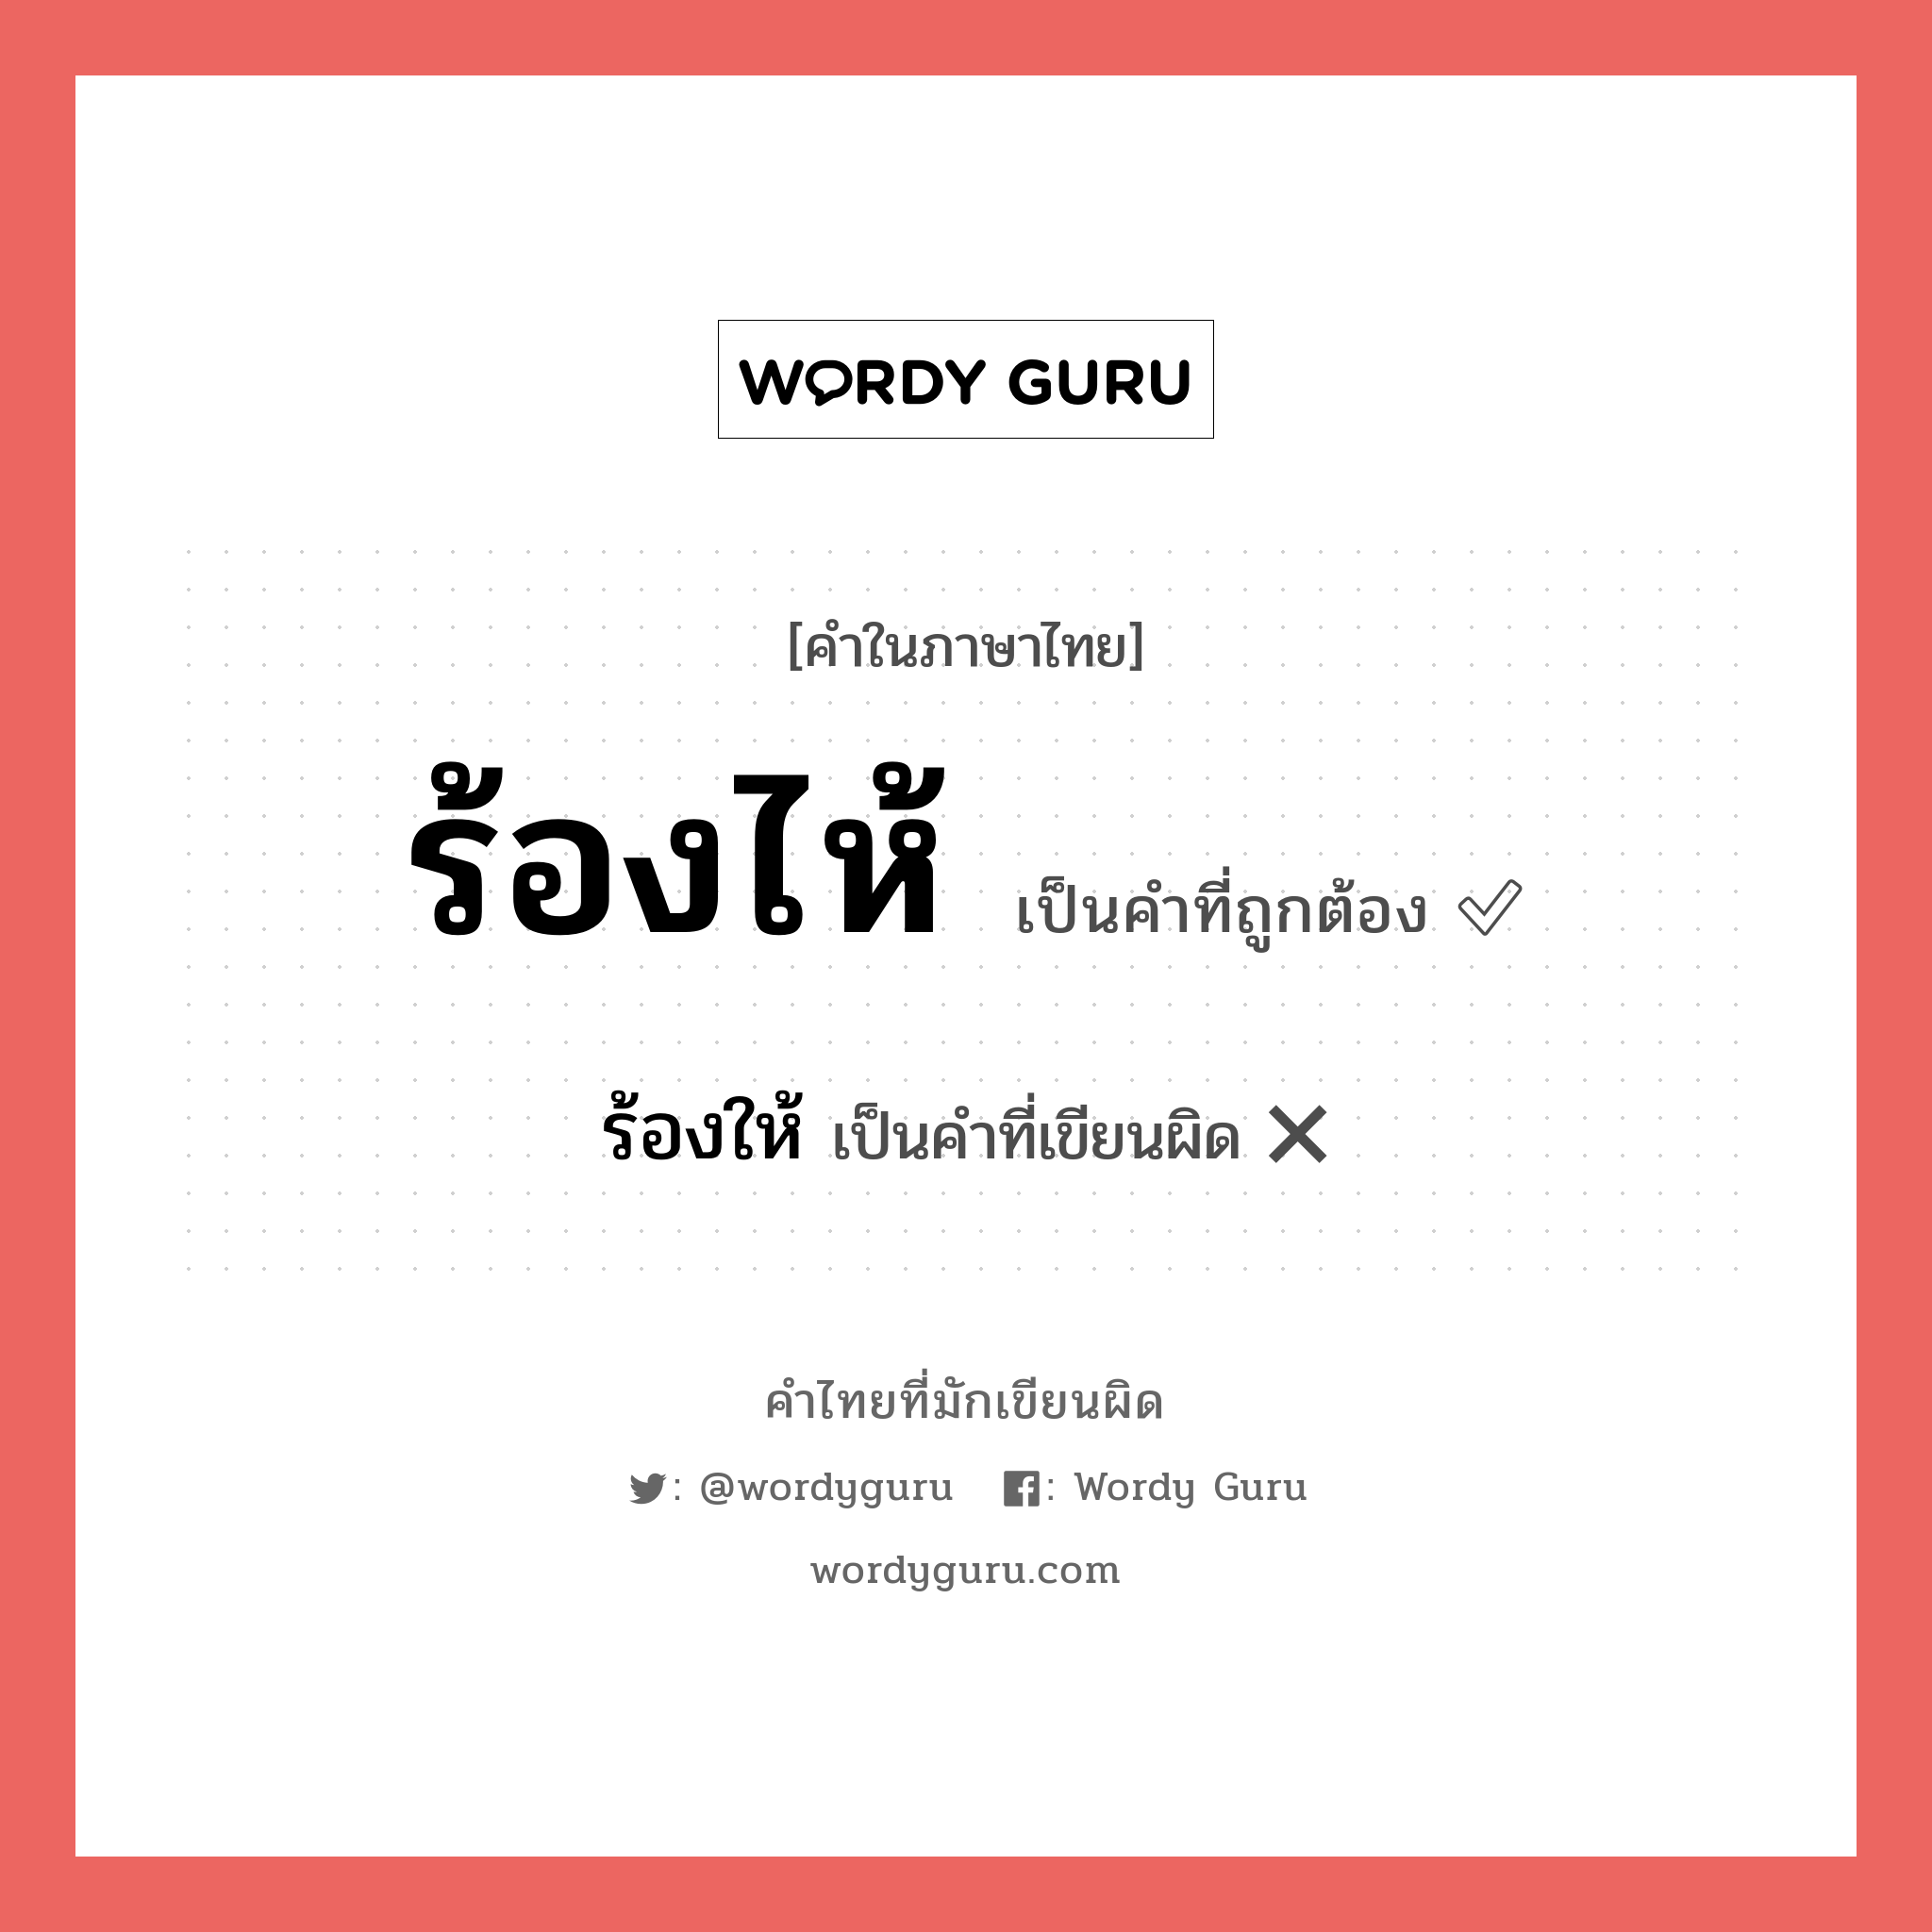 ร้องไห้ หรือ ร้องให้ คำไหนเขียนถูก?, คำในภาษาไทยที่มักเขียนผิด ร้องไห้ คำที่ผิด ❌ ร้องให้